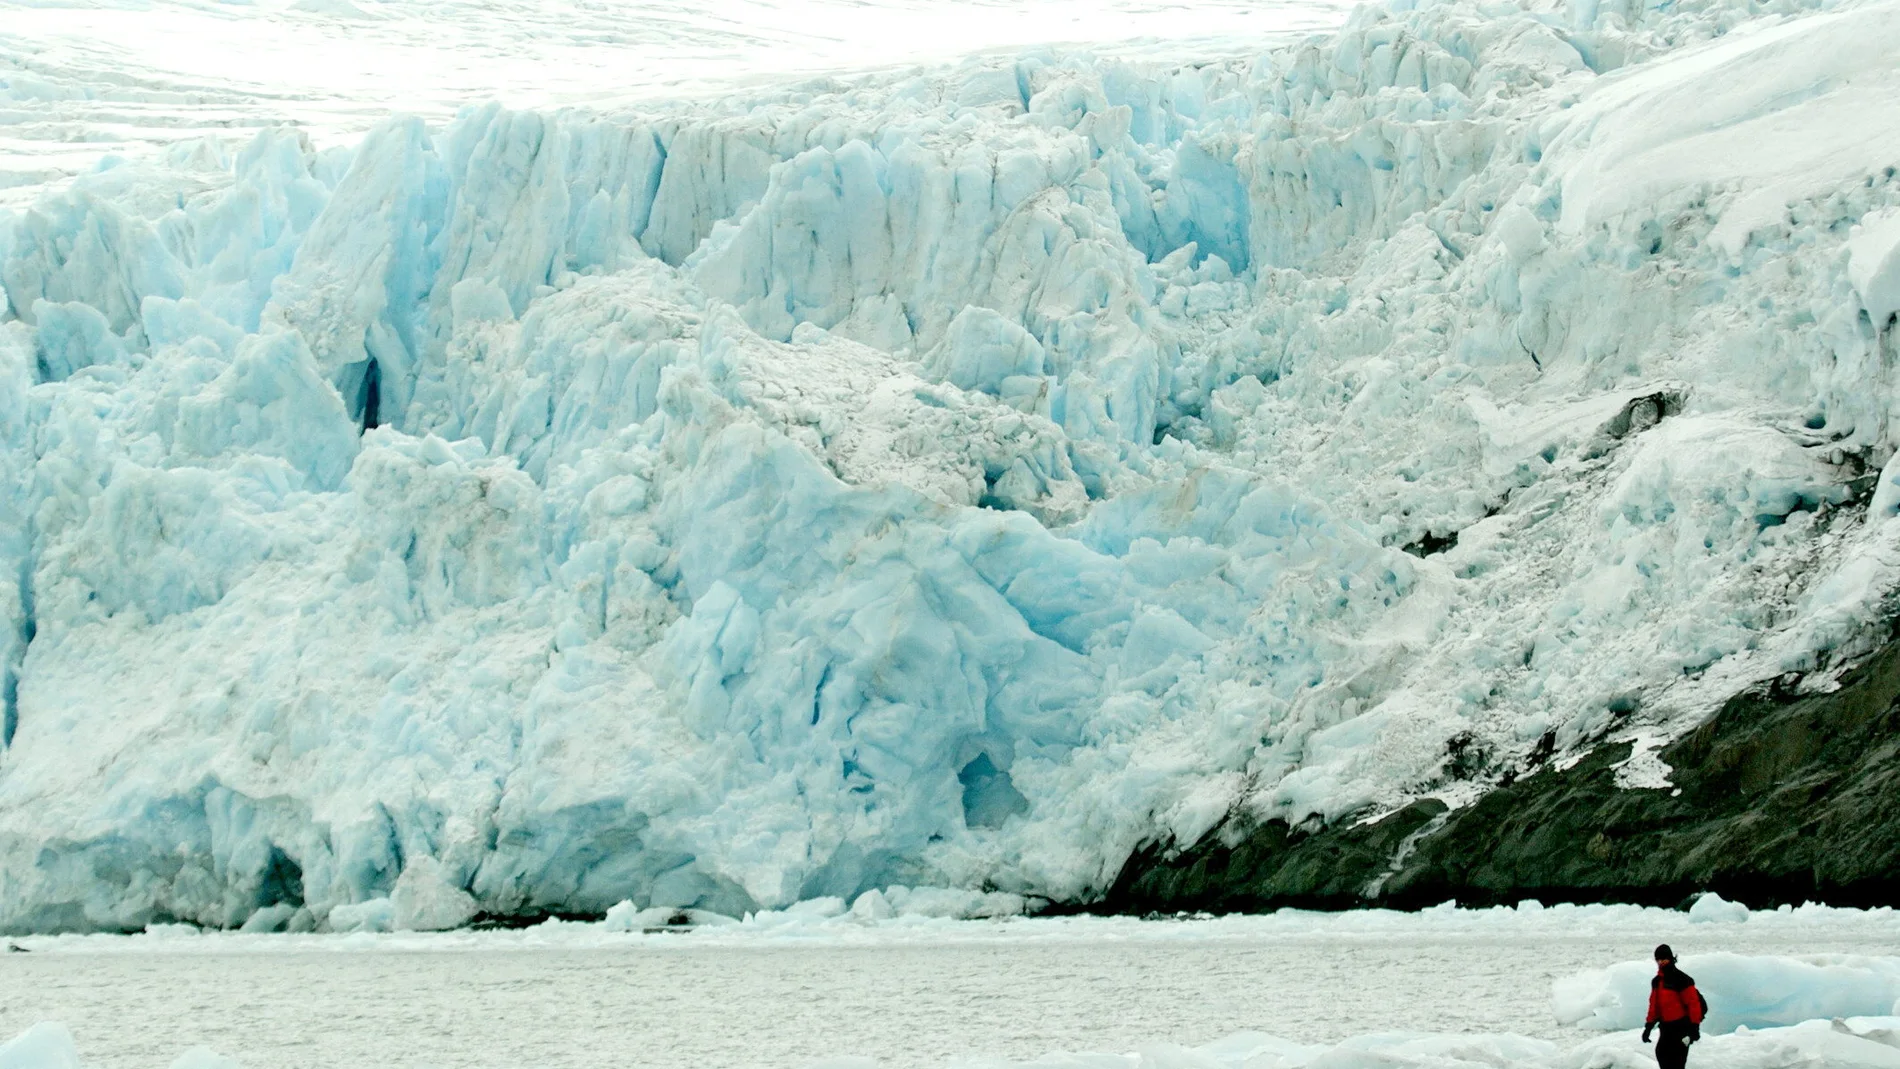 La NASA prevé que la contracción de glaciares en la Antártida es "imparable"